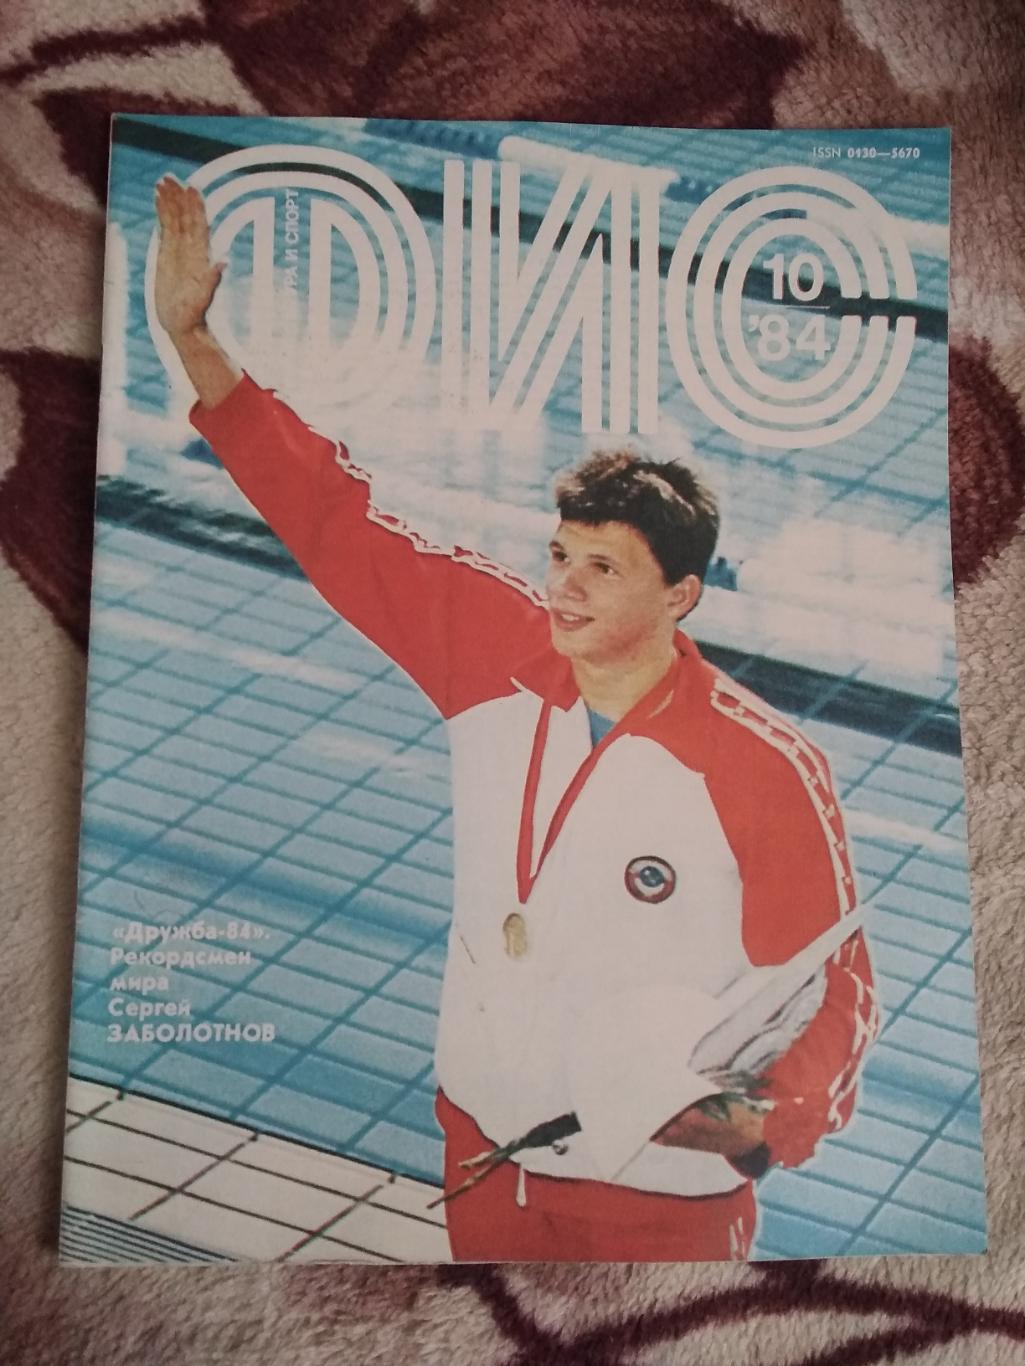 Журнал.Физкультура и спорт № 10 1984 г. (ФиС).